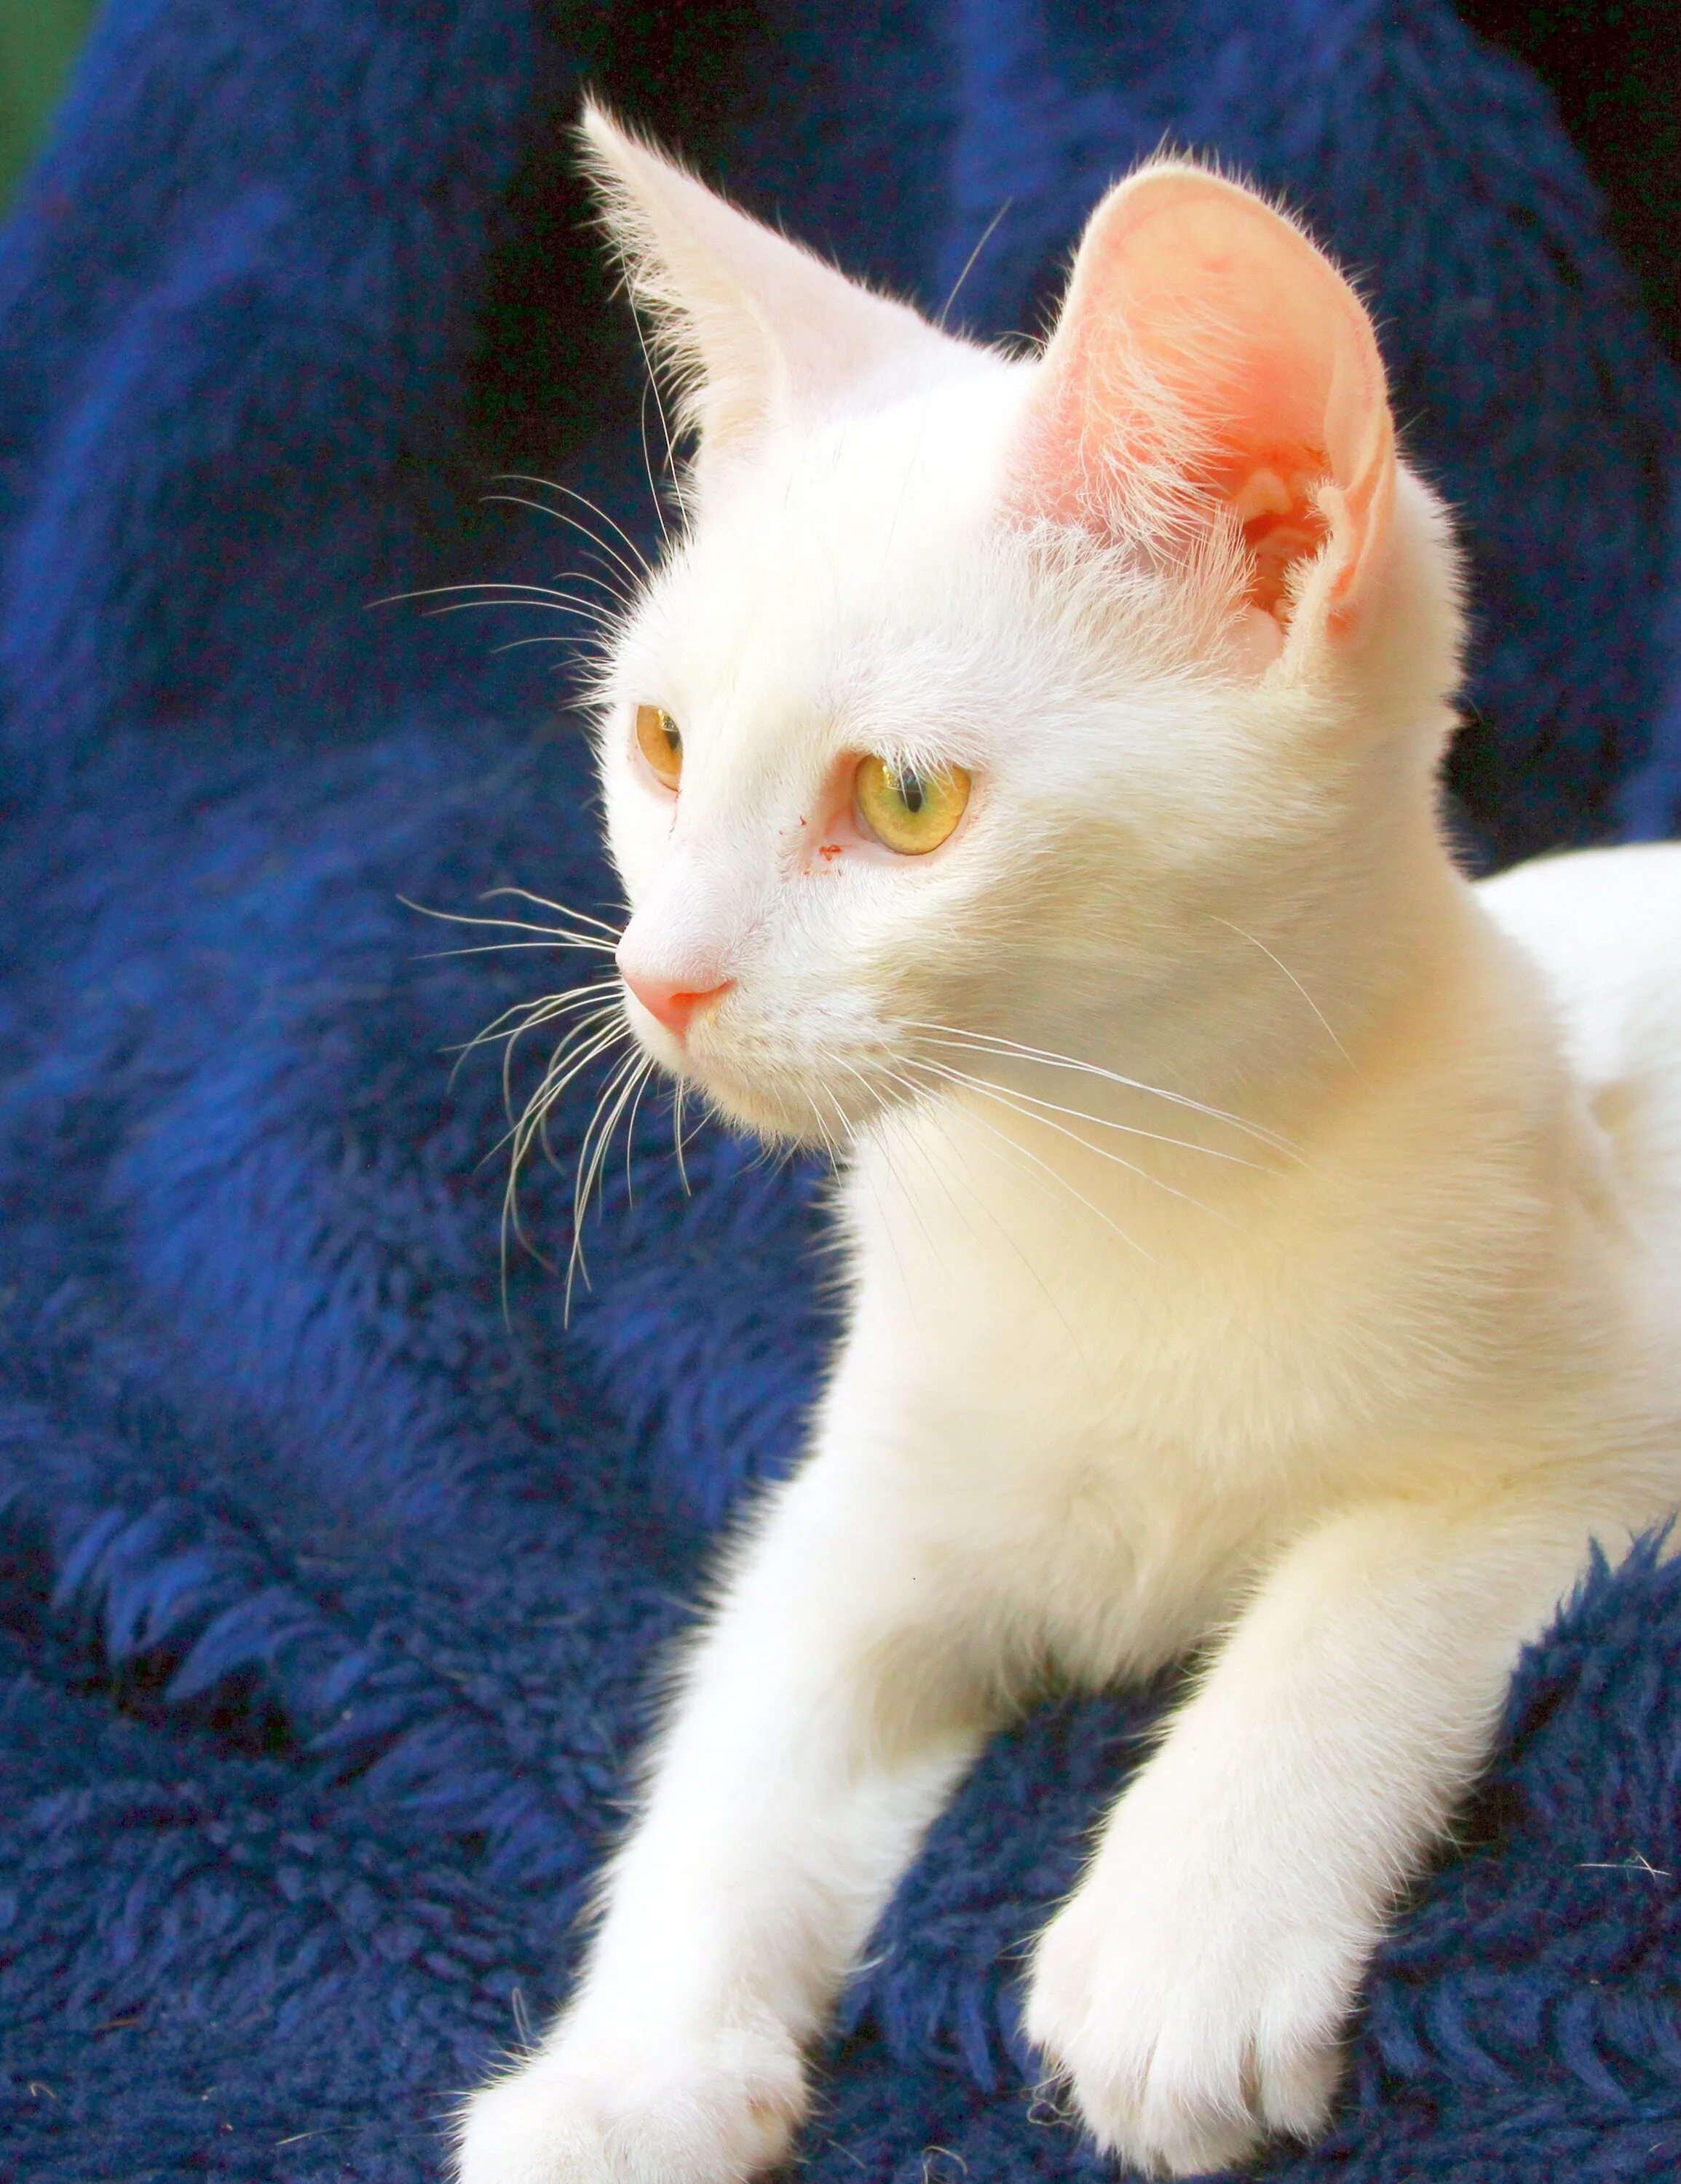 Как называется белая порода кошек. Турецкая ангора кошка. Турецкая Анатолийская короткошерстная ангора. Турецкая ангора кошка короткошерстная. Турецкая гладкошерстная ангорская кошка.